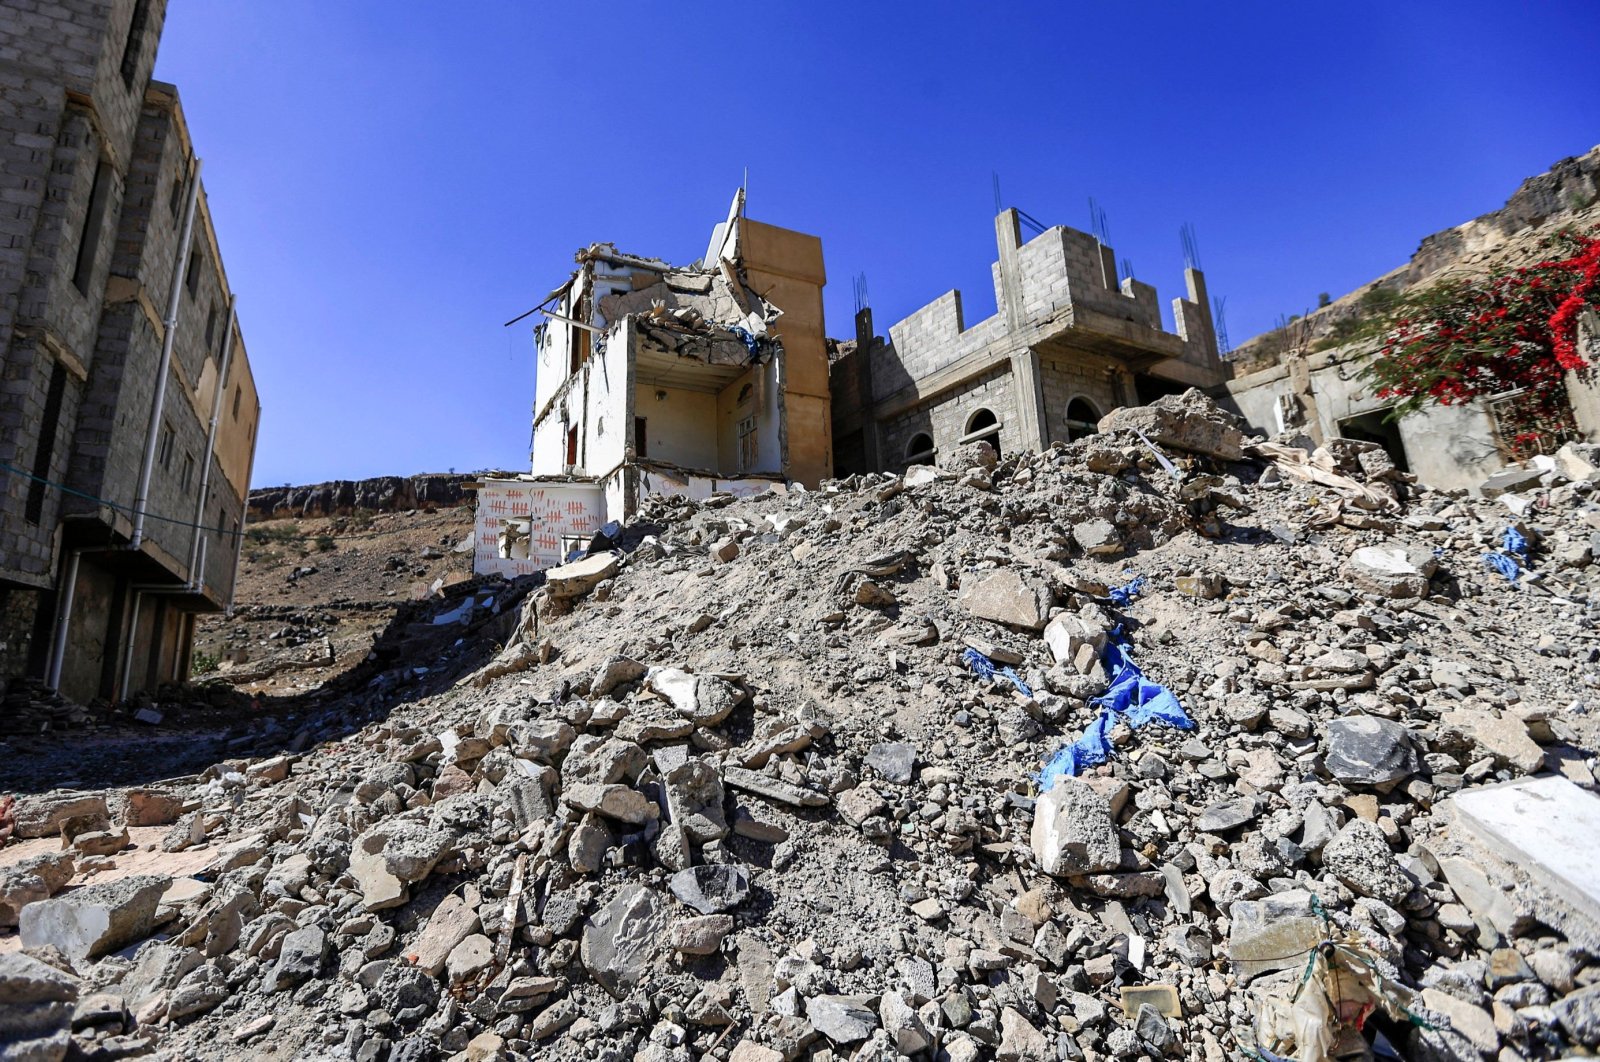 Serangan udara pimpinan Saudi di Sanaa Yaman menewaskan lebih dari selusin orang